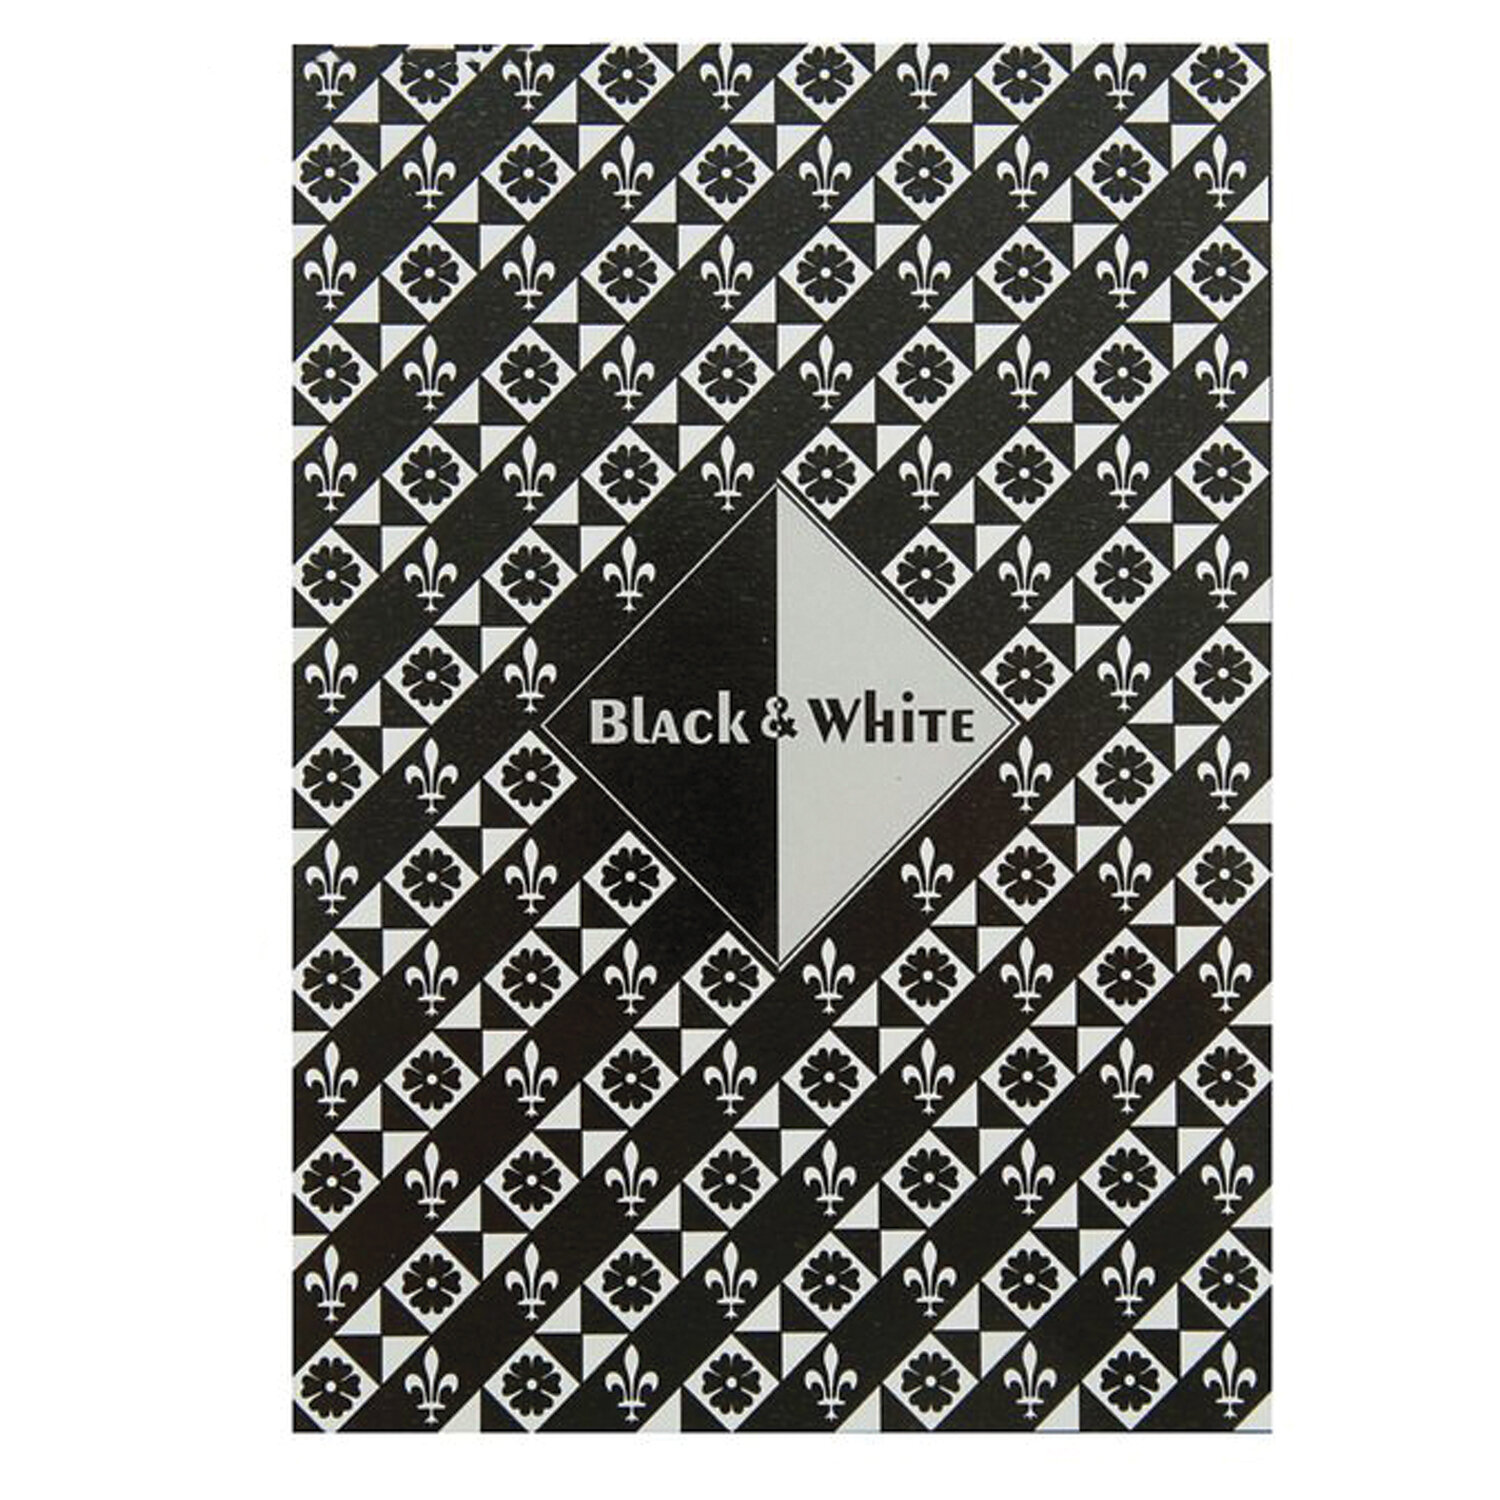 фото Папка для эскизов/планшет "черный и белый" а5 148х210 мм, 30 листов, 2 цвета пл-0328 лилия холдинг